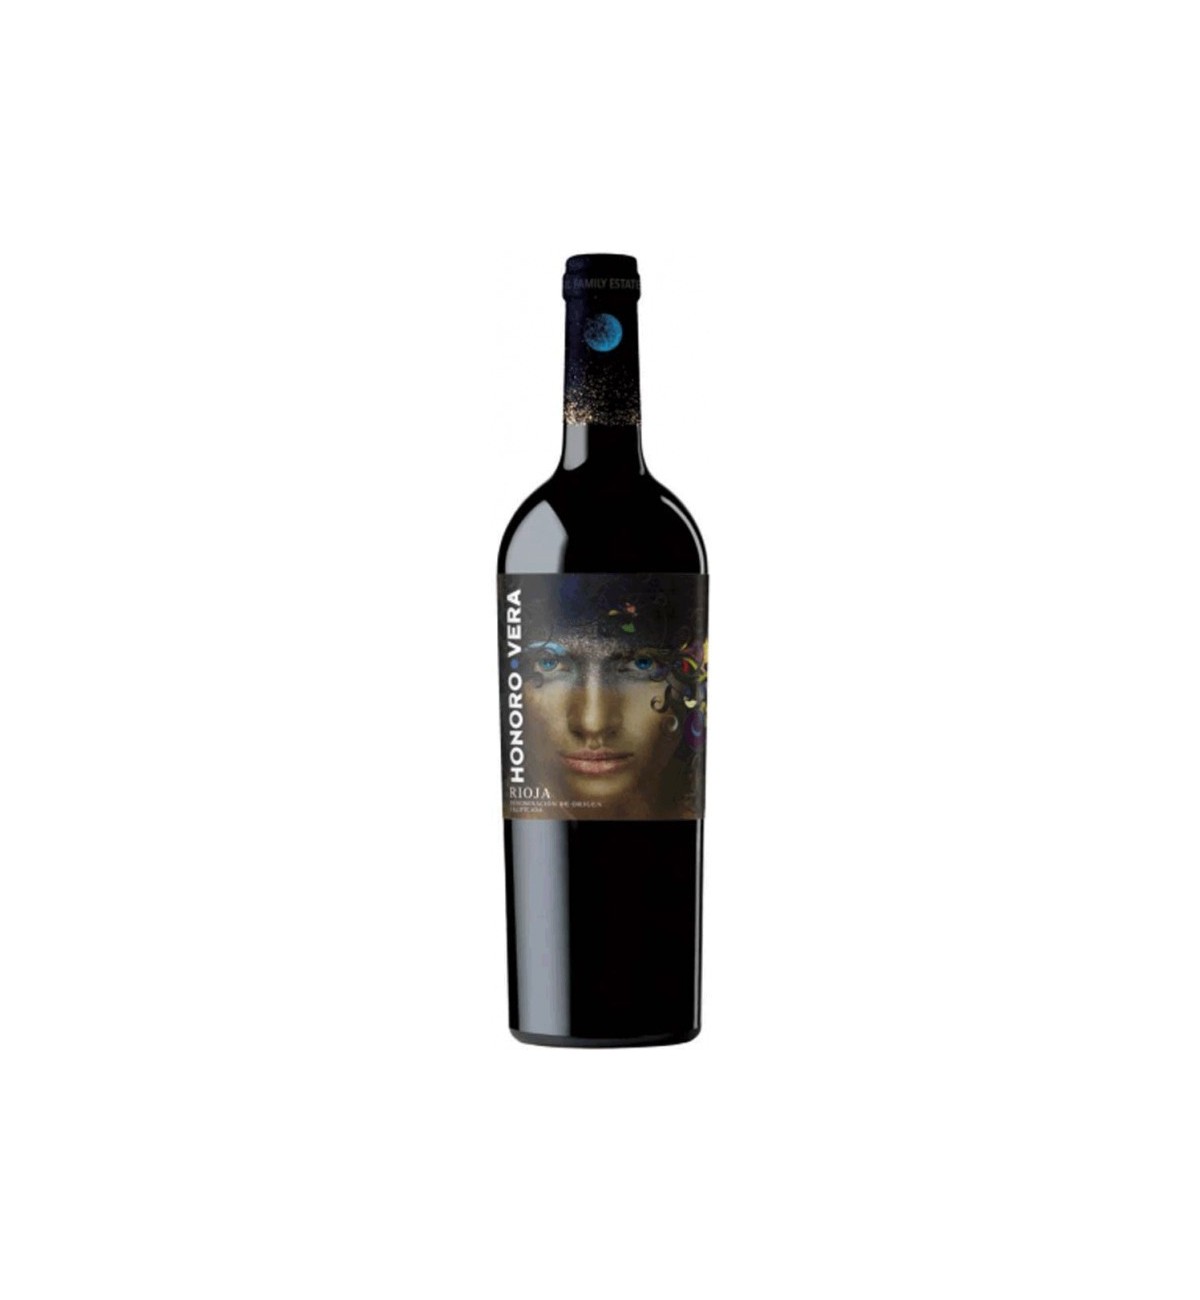 Honoro Vera Rioja